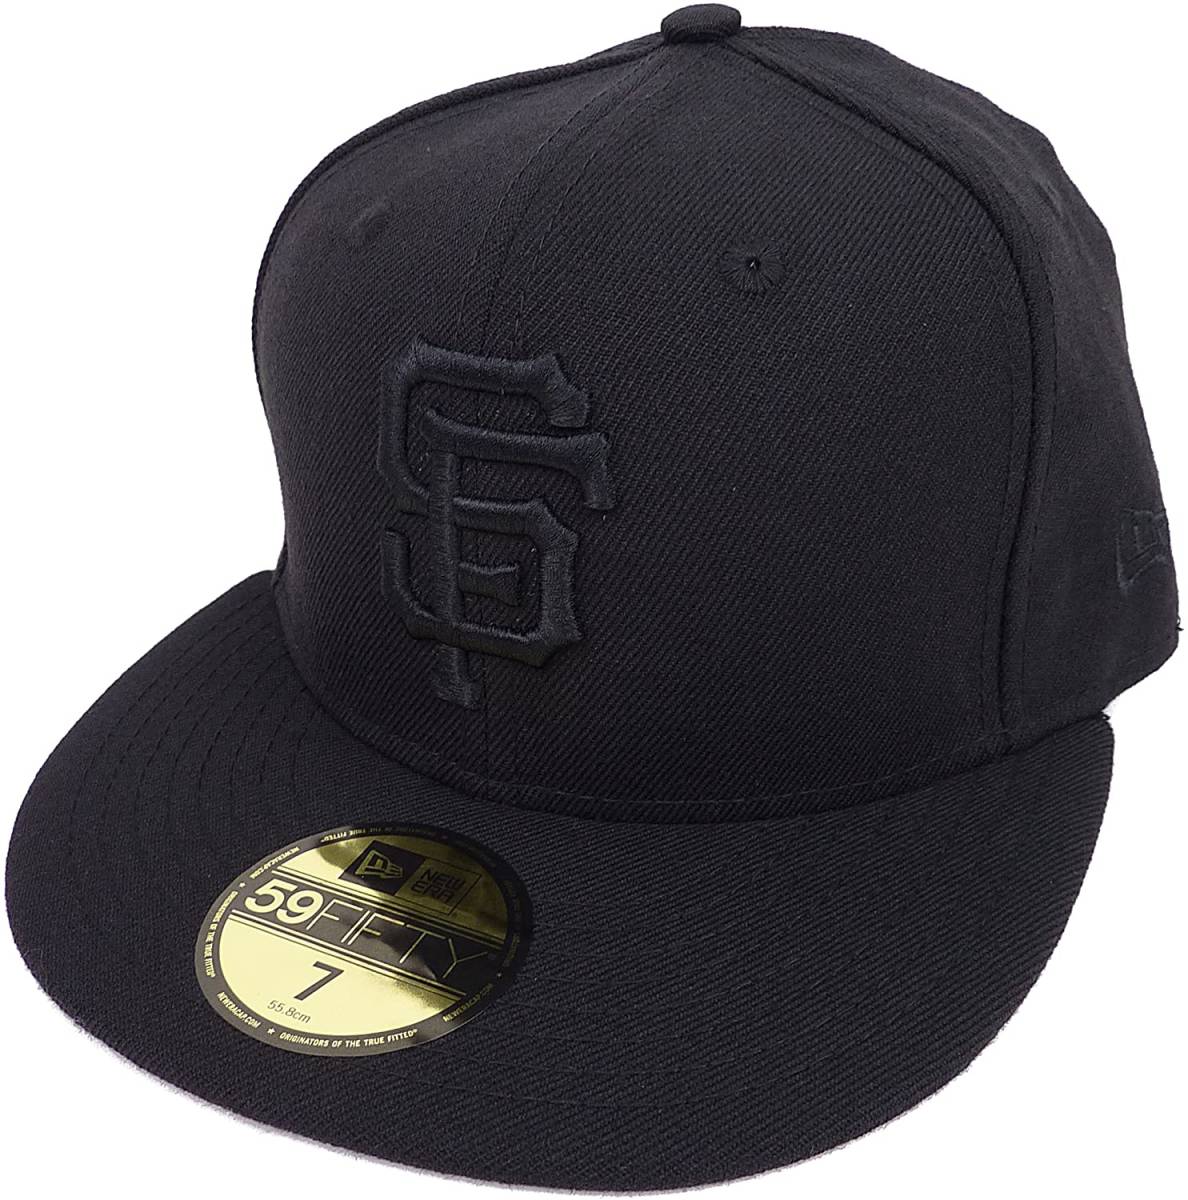 『2年保証』 ジャイアンツ サンフランシスコ MLB ニューエラ Era New ベースボールキャップ [並行輸入品] 55.8cm 7 (ブラック/ブラック) 野球帽